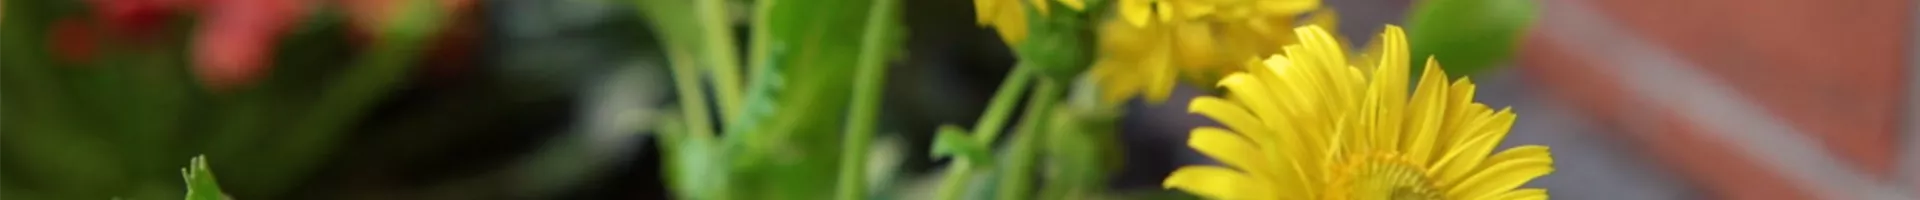 Gemswurz - Einpflanzen im Garten (Thumbnail).jpg